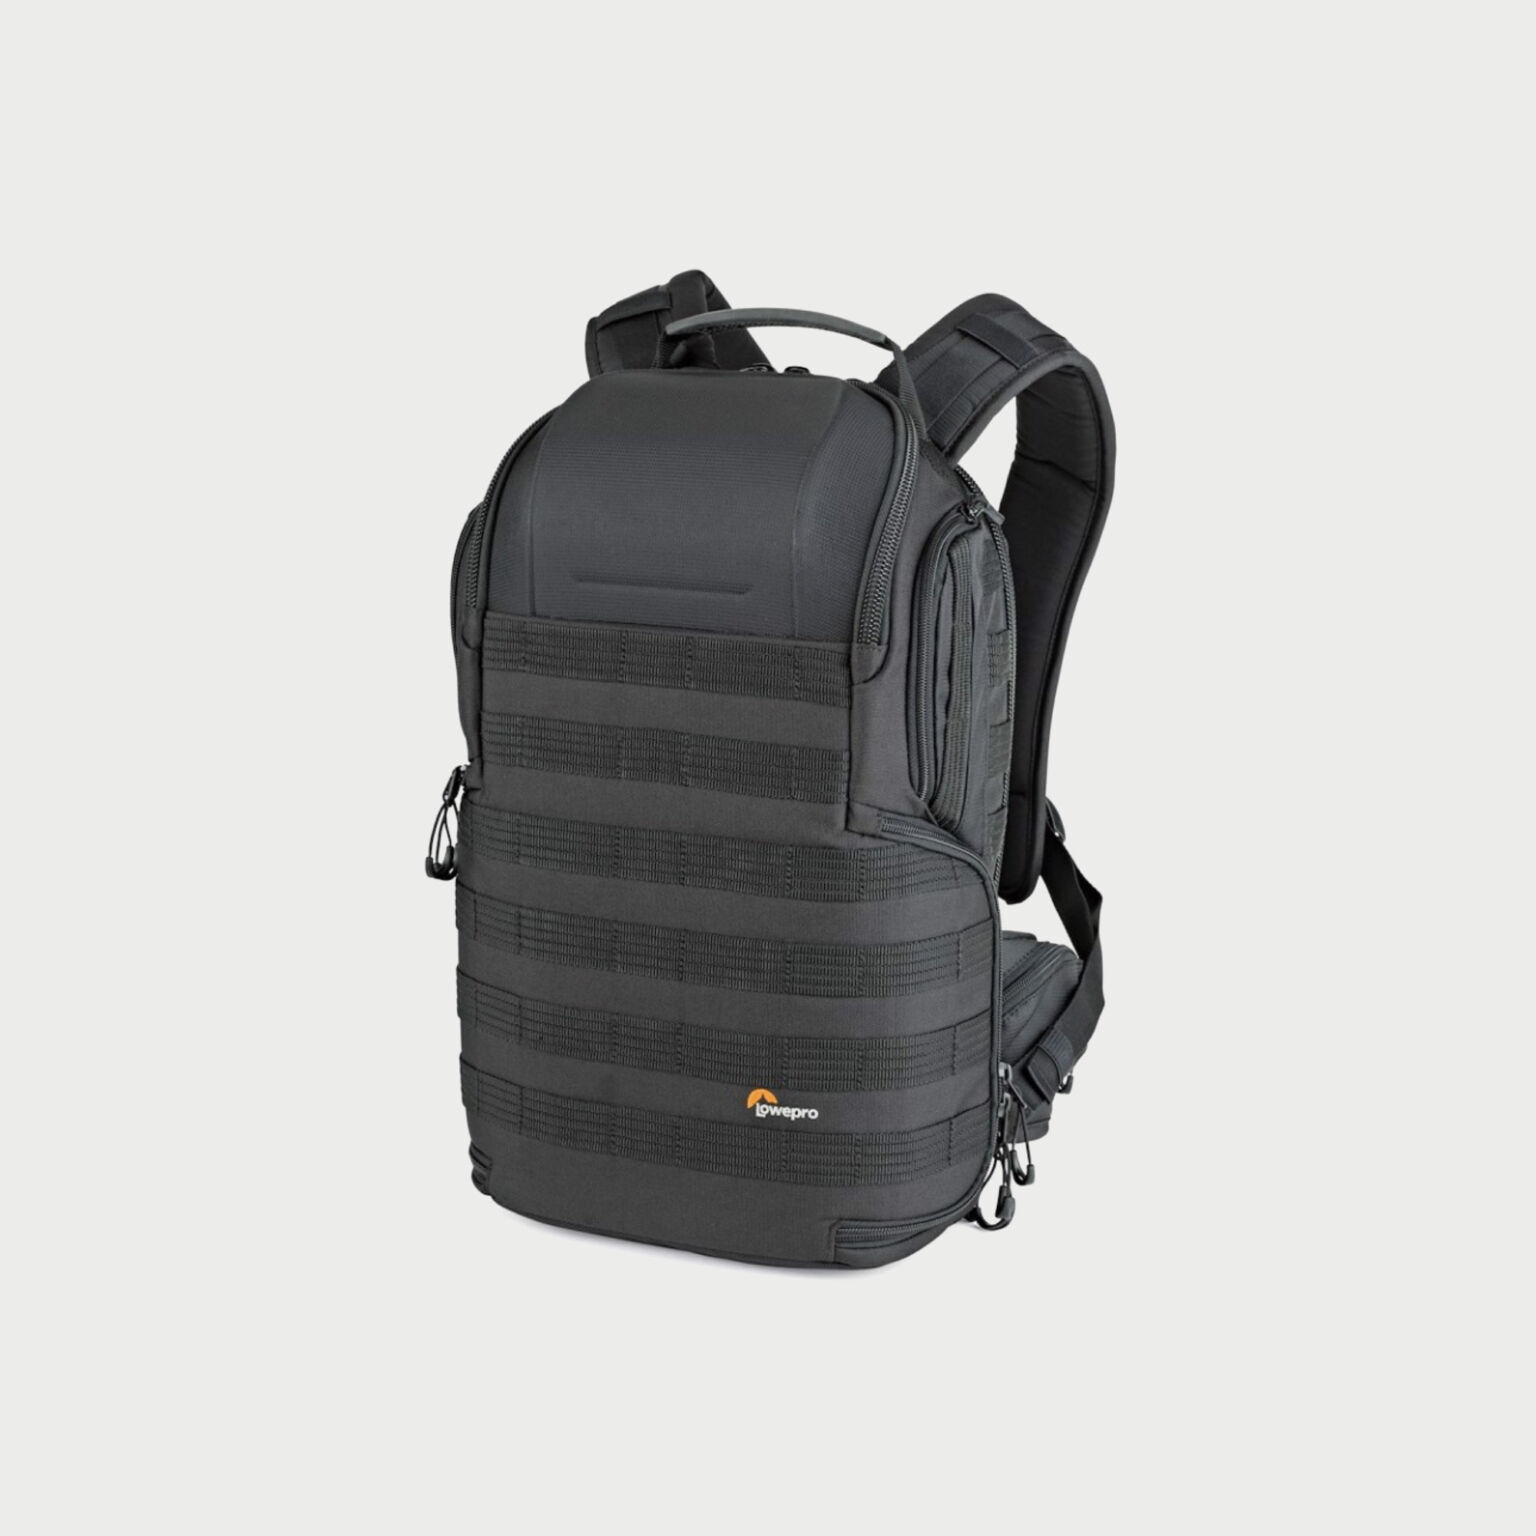 Lowepro Protactic Bp 450 Aw Ii Backpack Black